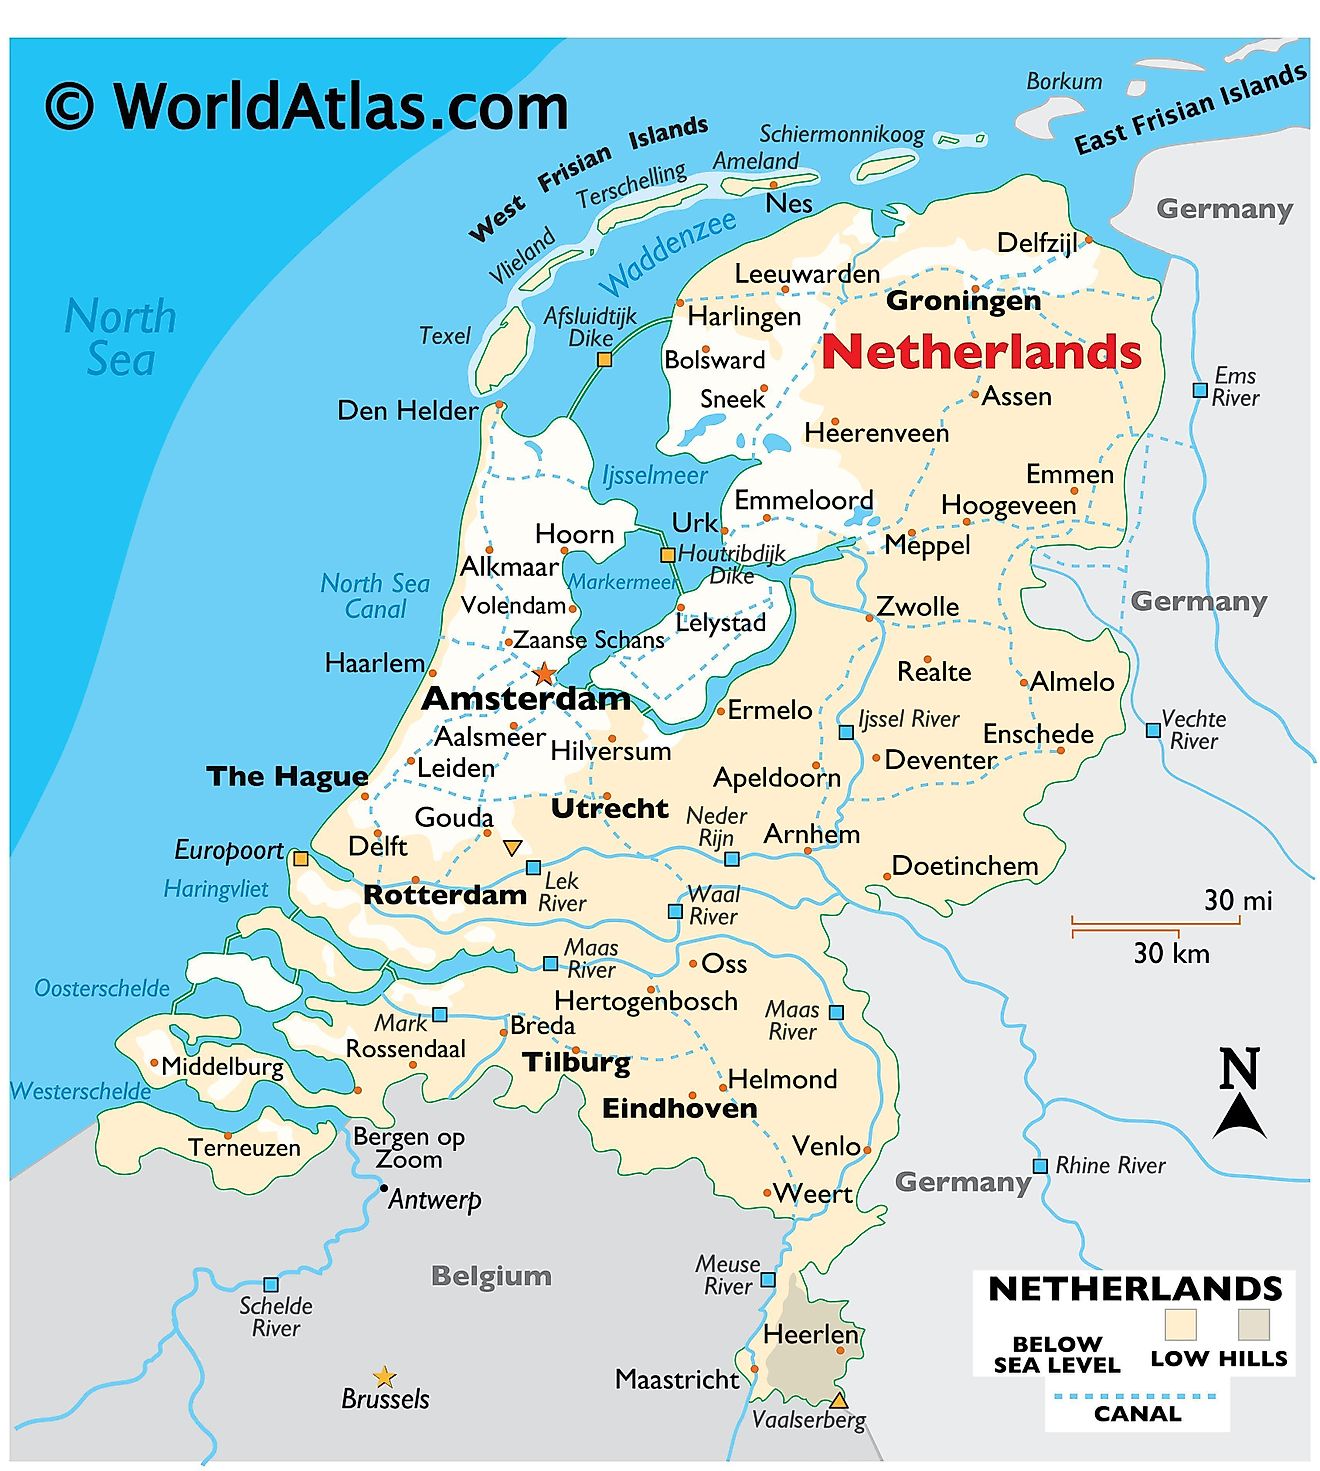 Mapa físico de los Países Bajos que muestra el relieve, las fronteras internacionales, los ríos principales, los puntos extremos, las ciudades importantes, las islas, etc.